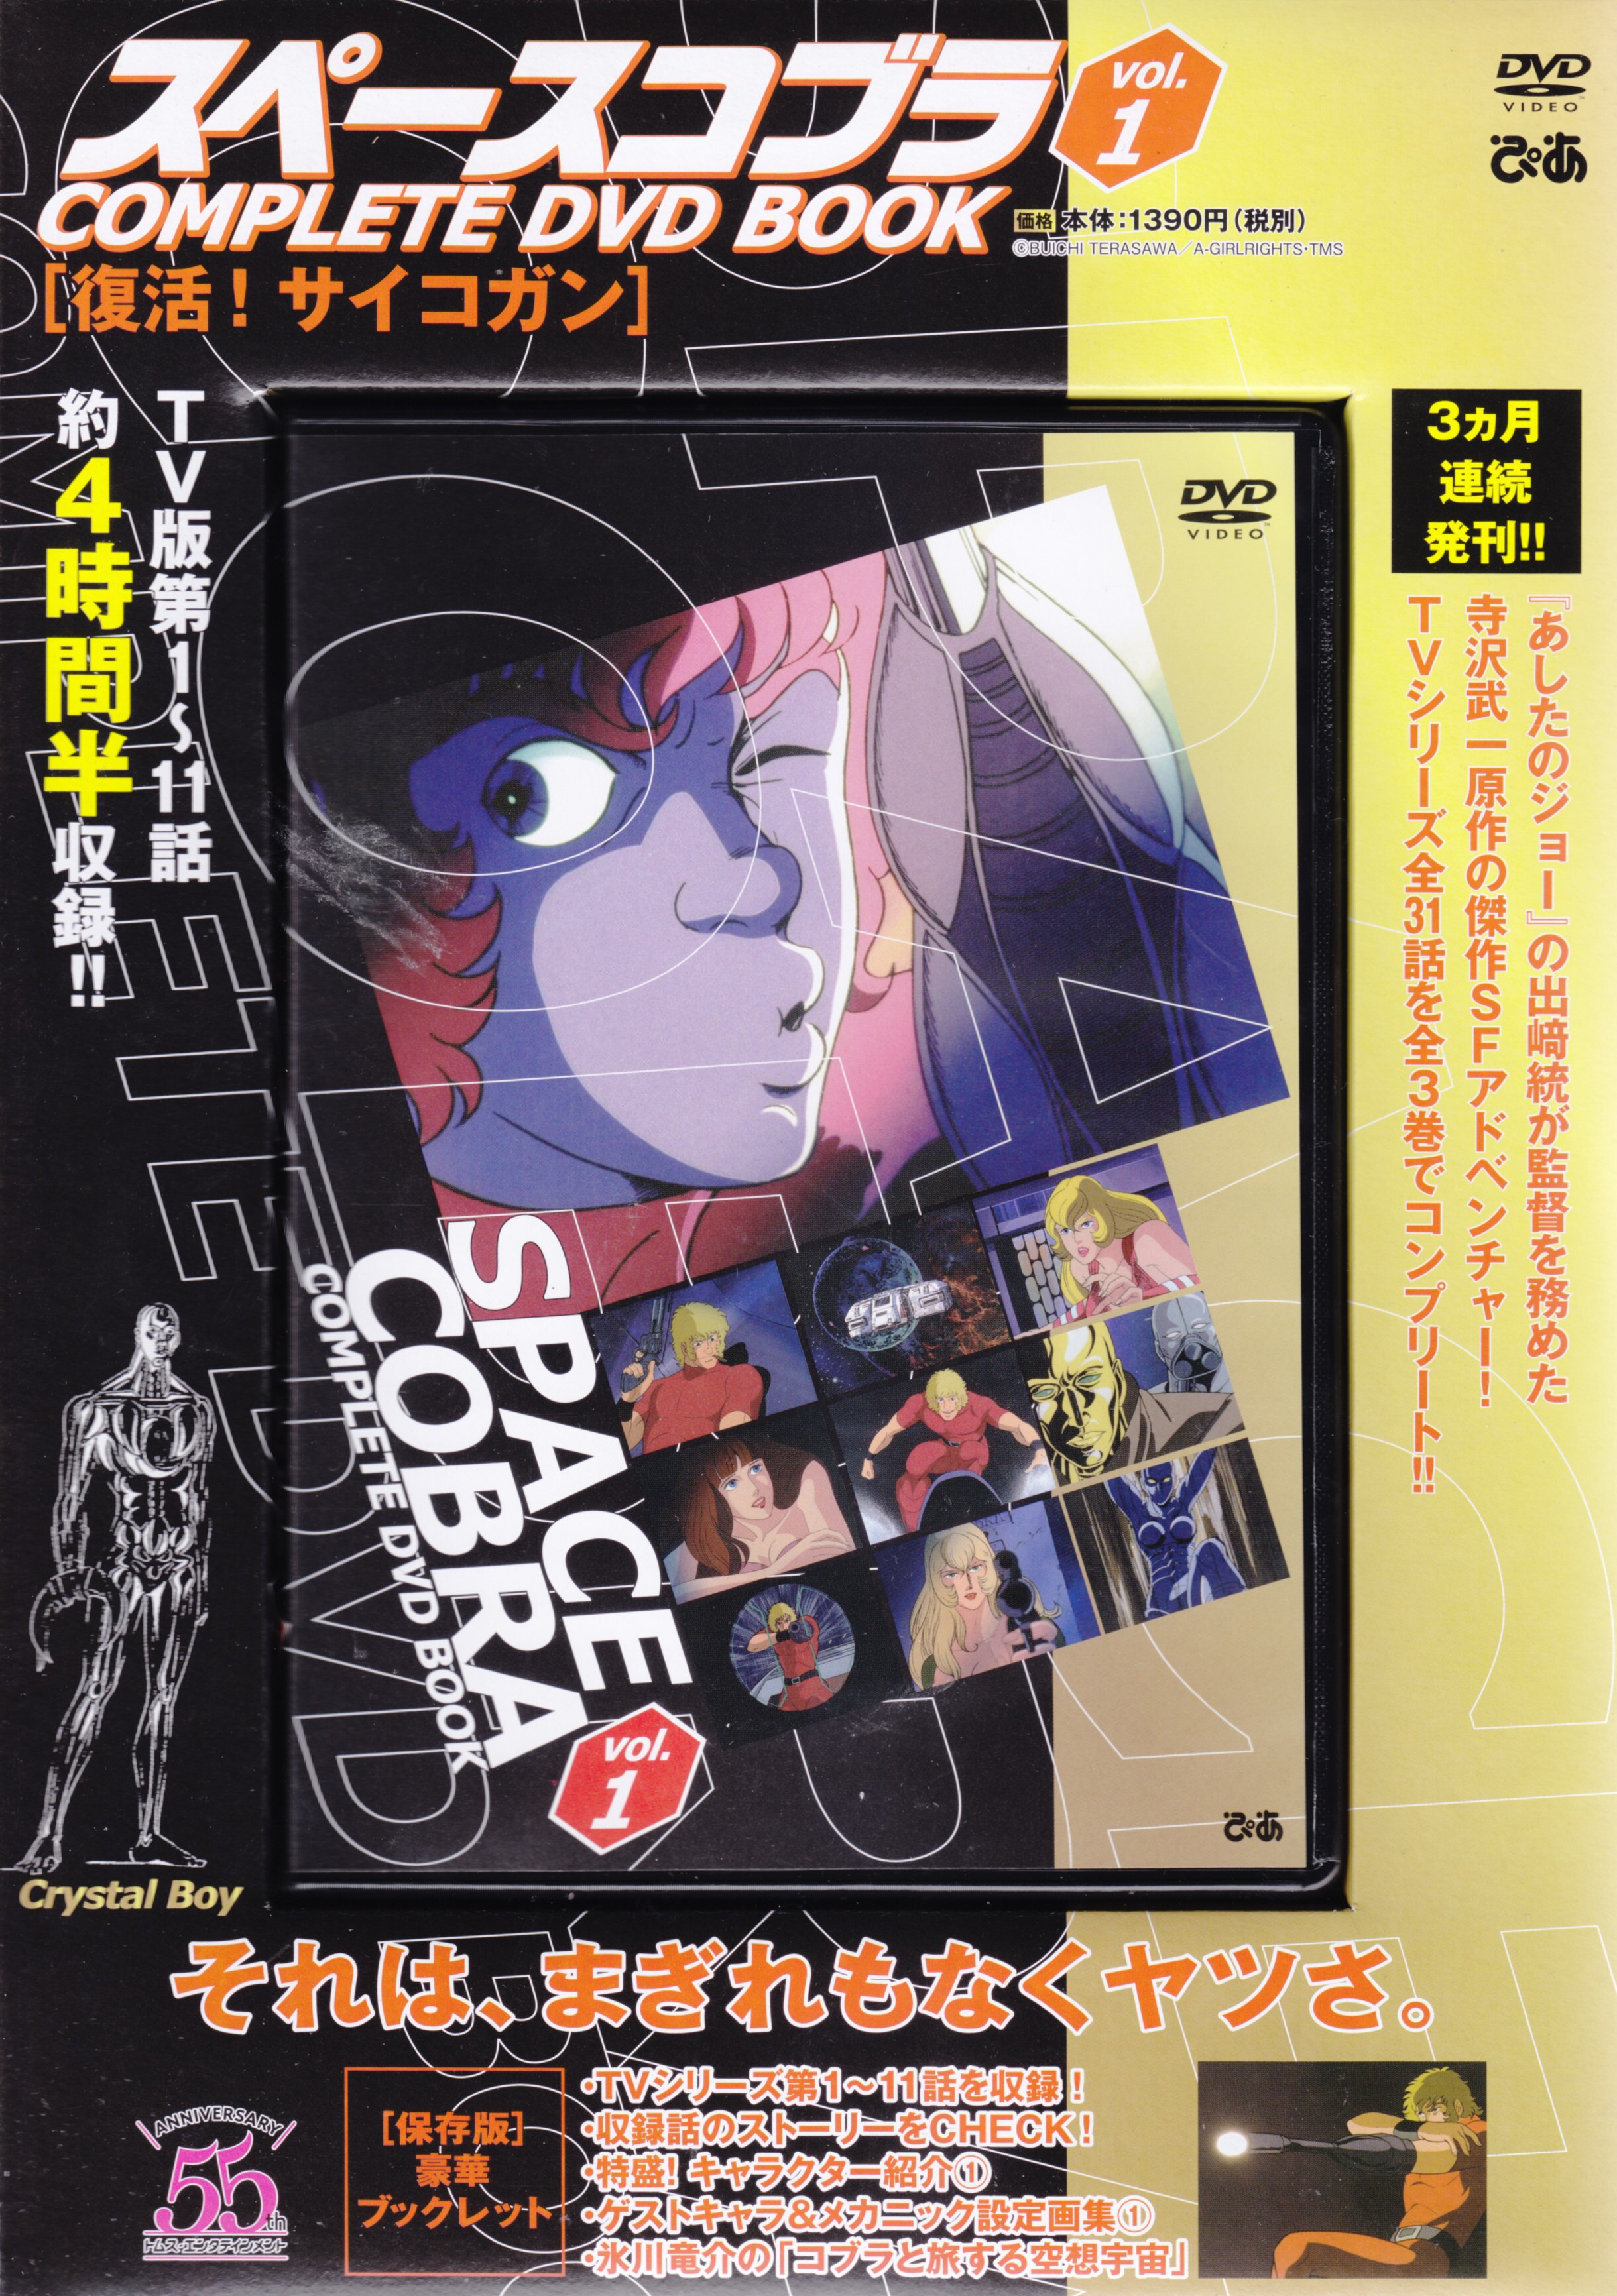 スペースコブラ COMPLETE DVD BOOK 全3巻セット gorilla.family